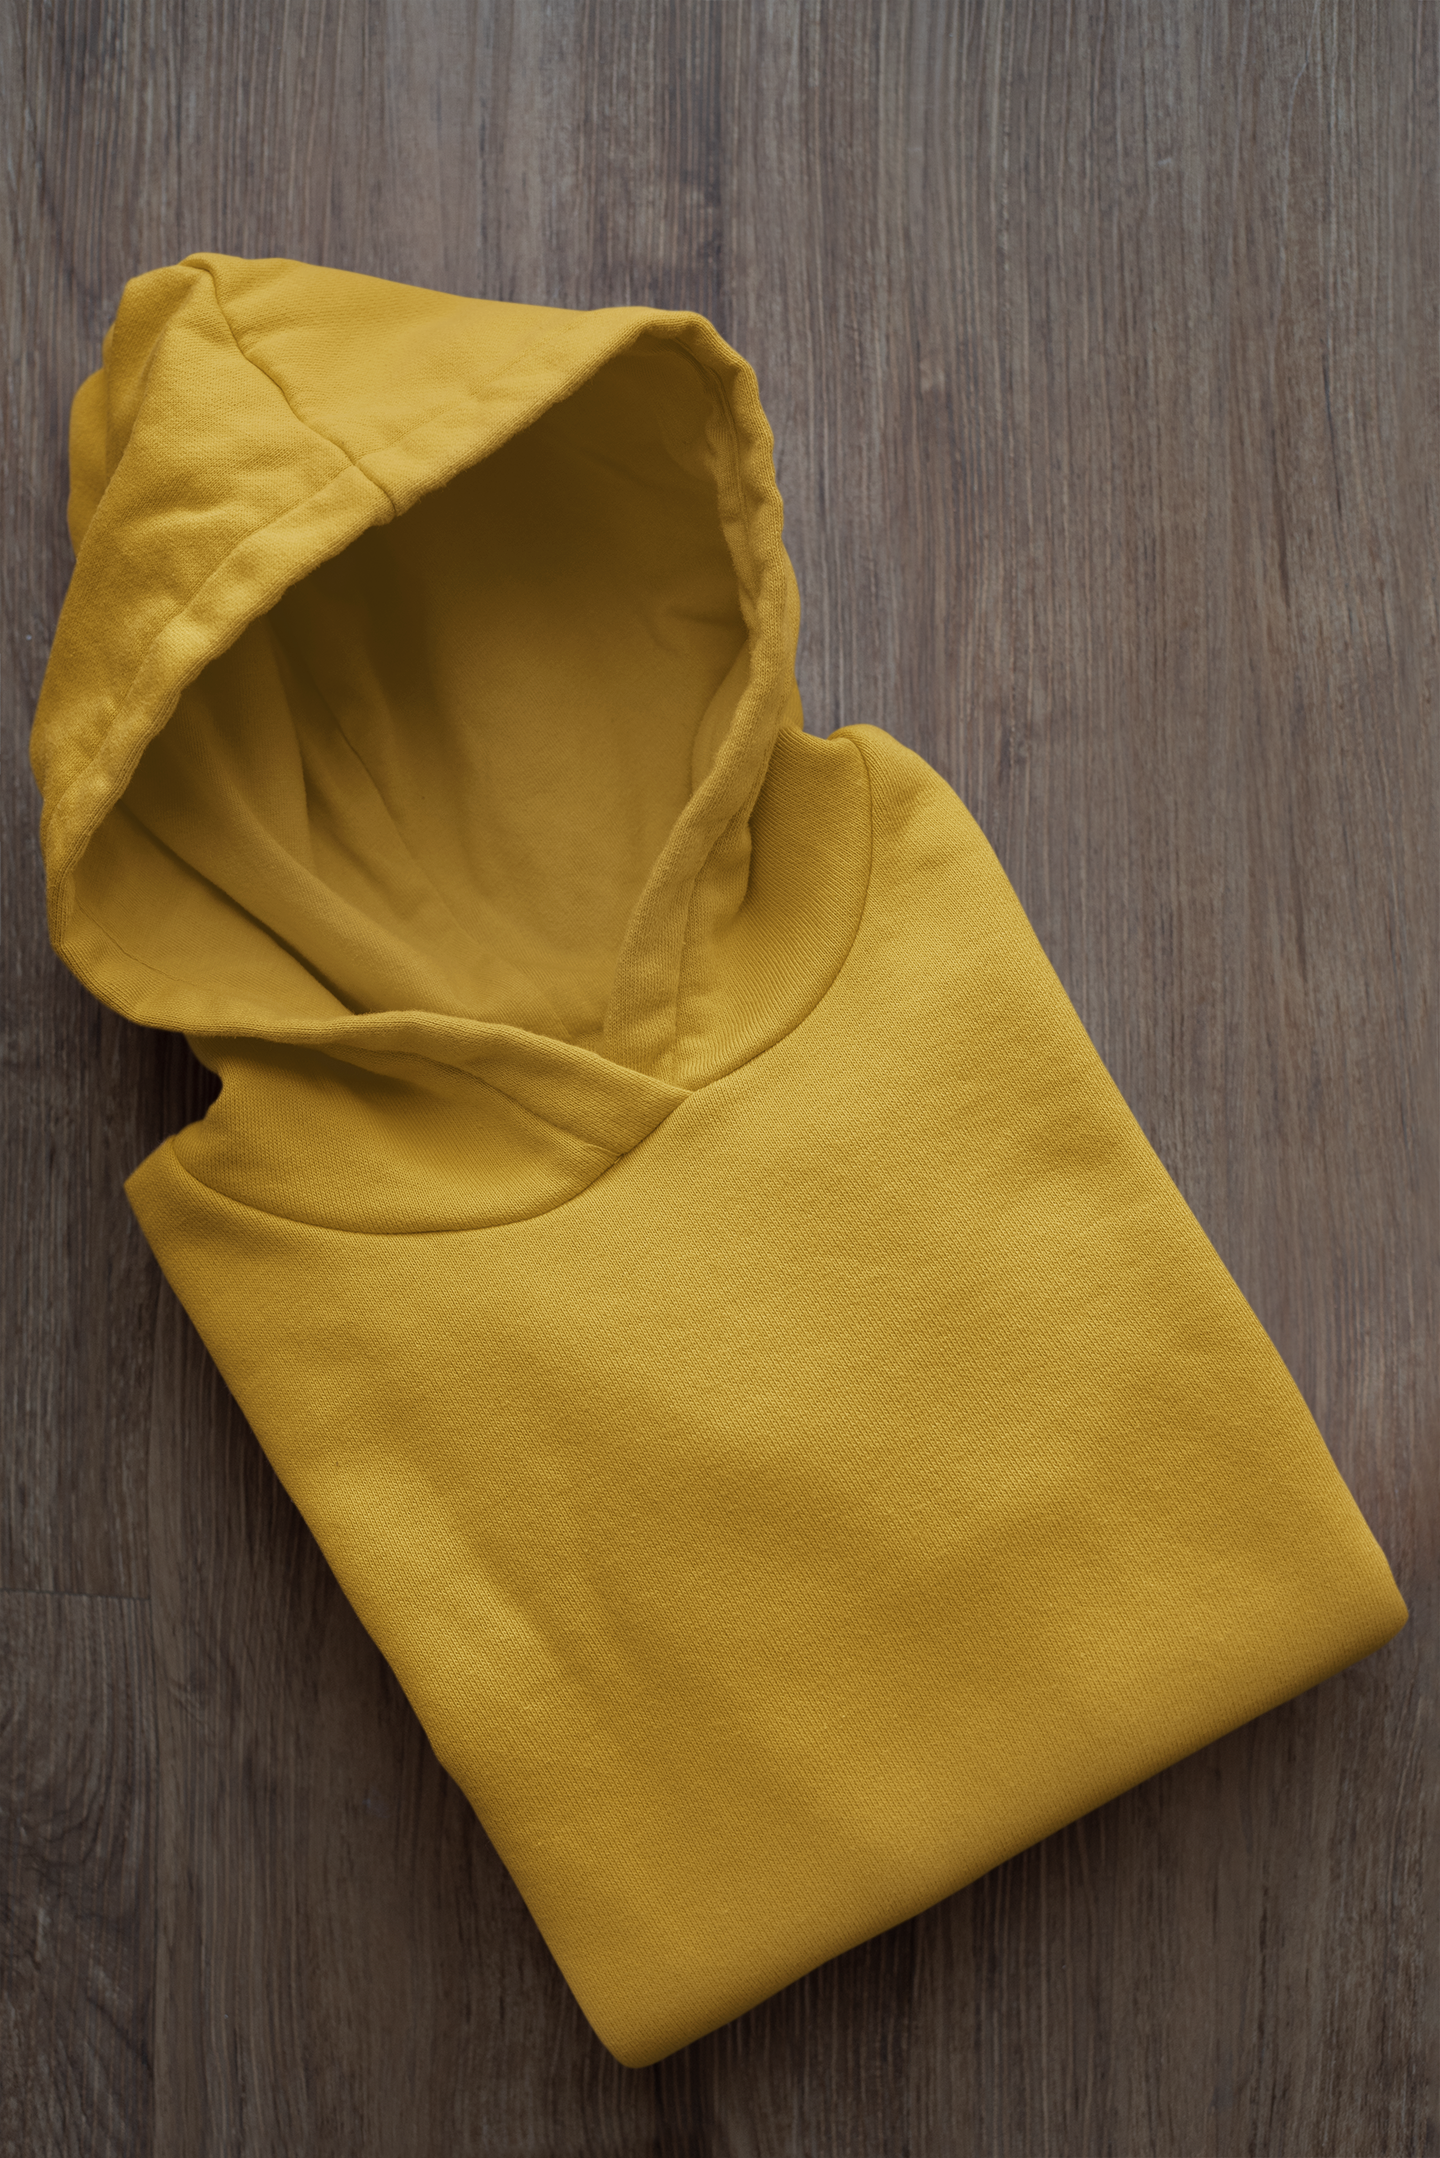 Basic Mustard Yellow Winter Hoodies